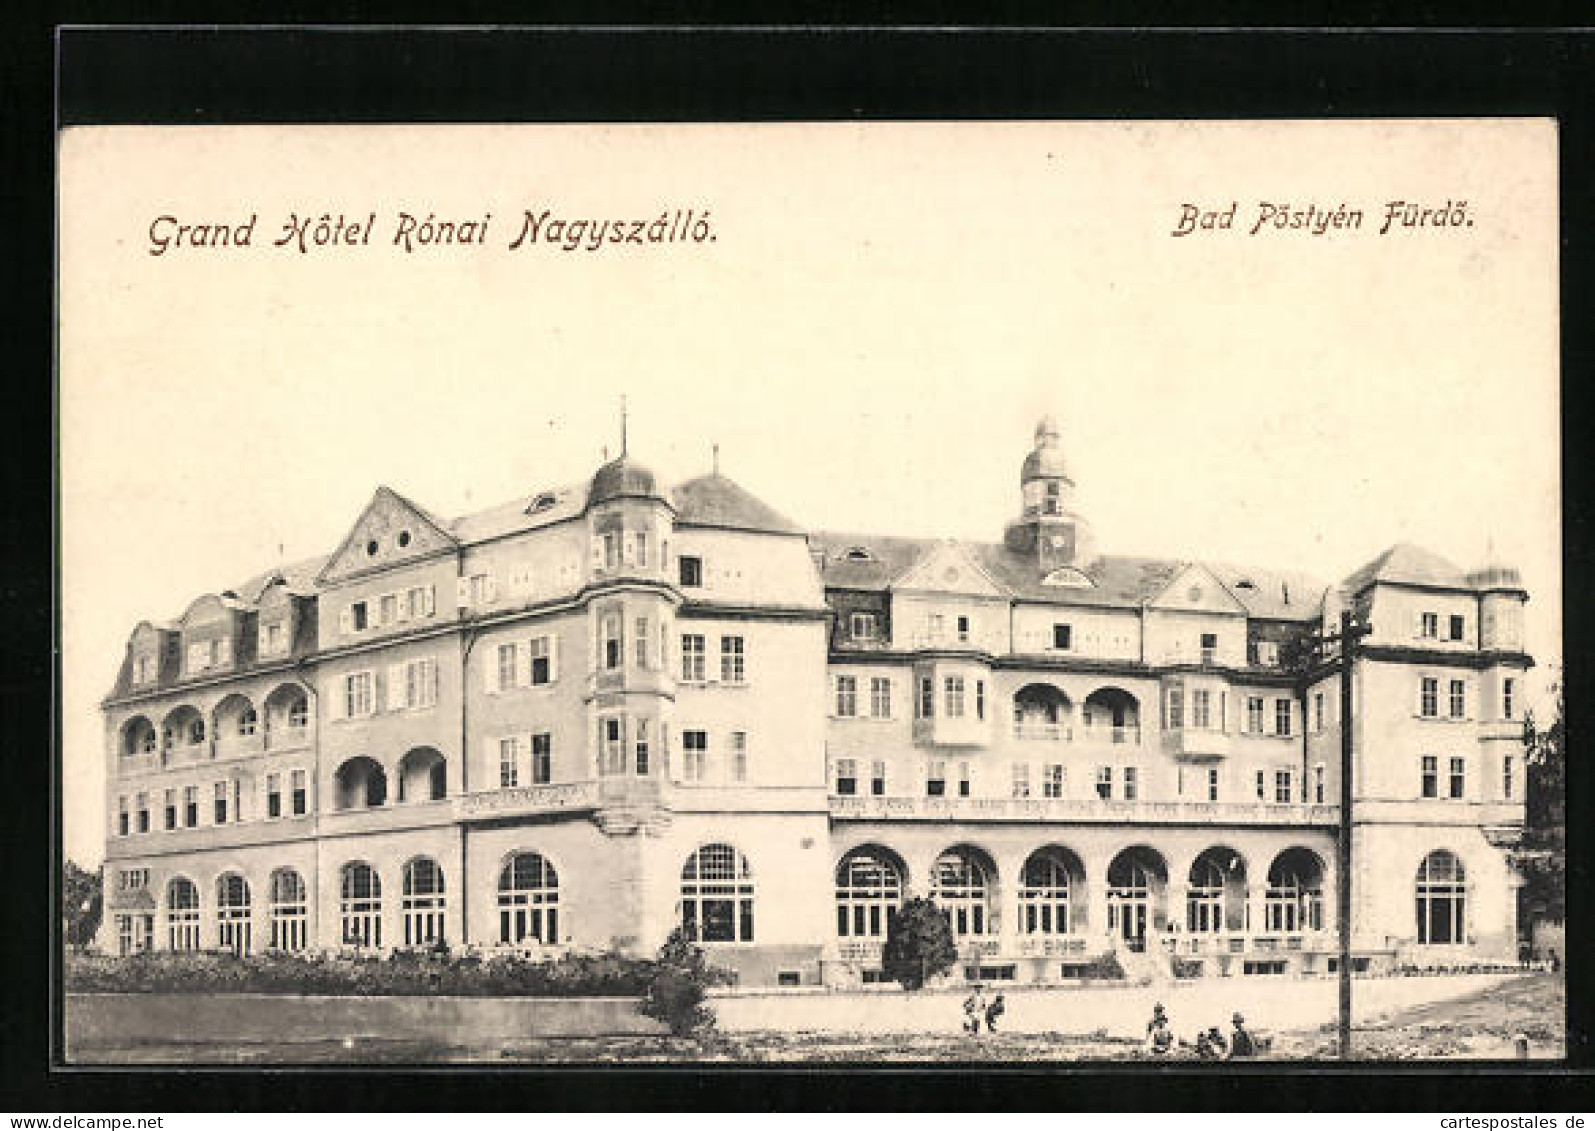 AK Bad Pöstyen Fürdö, Grand Hôtel Ronai Nagyszallo  - Slovaquie